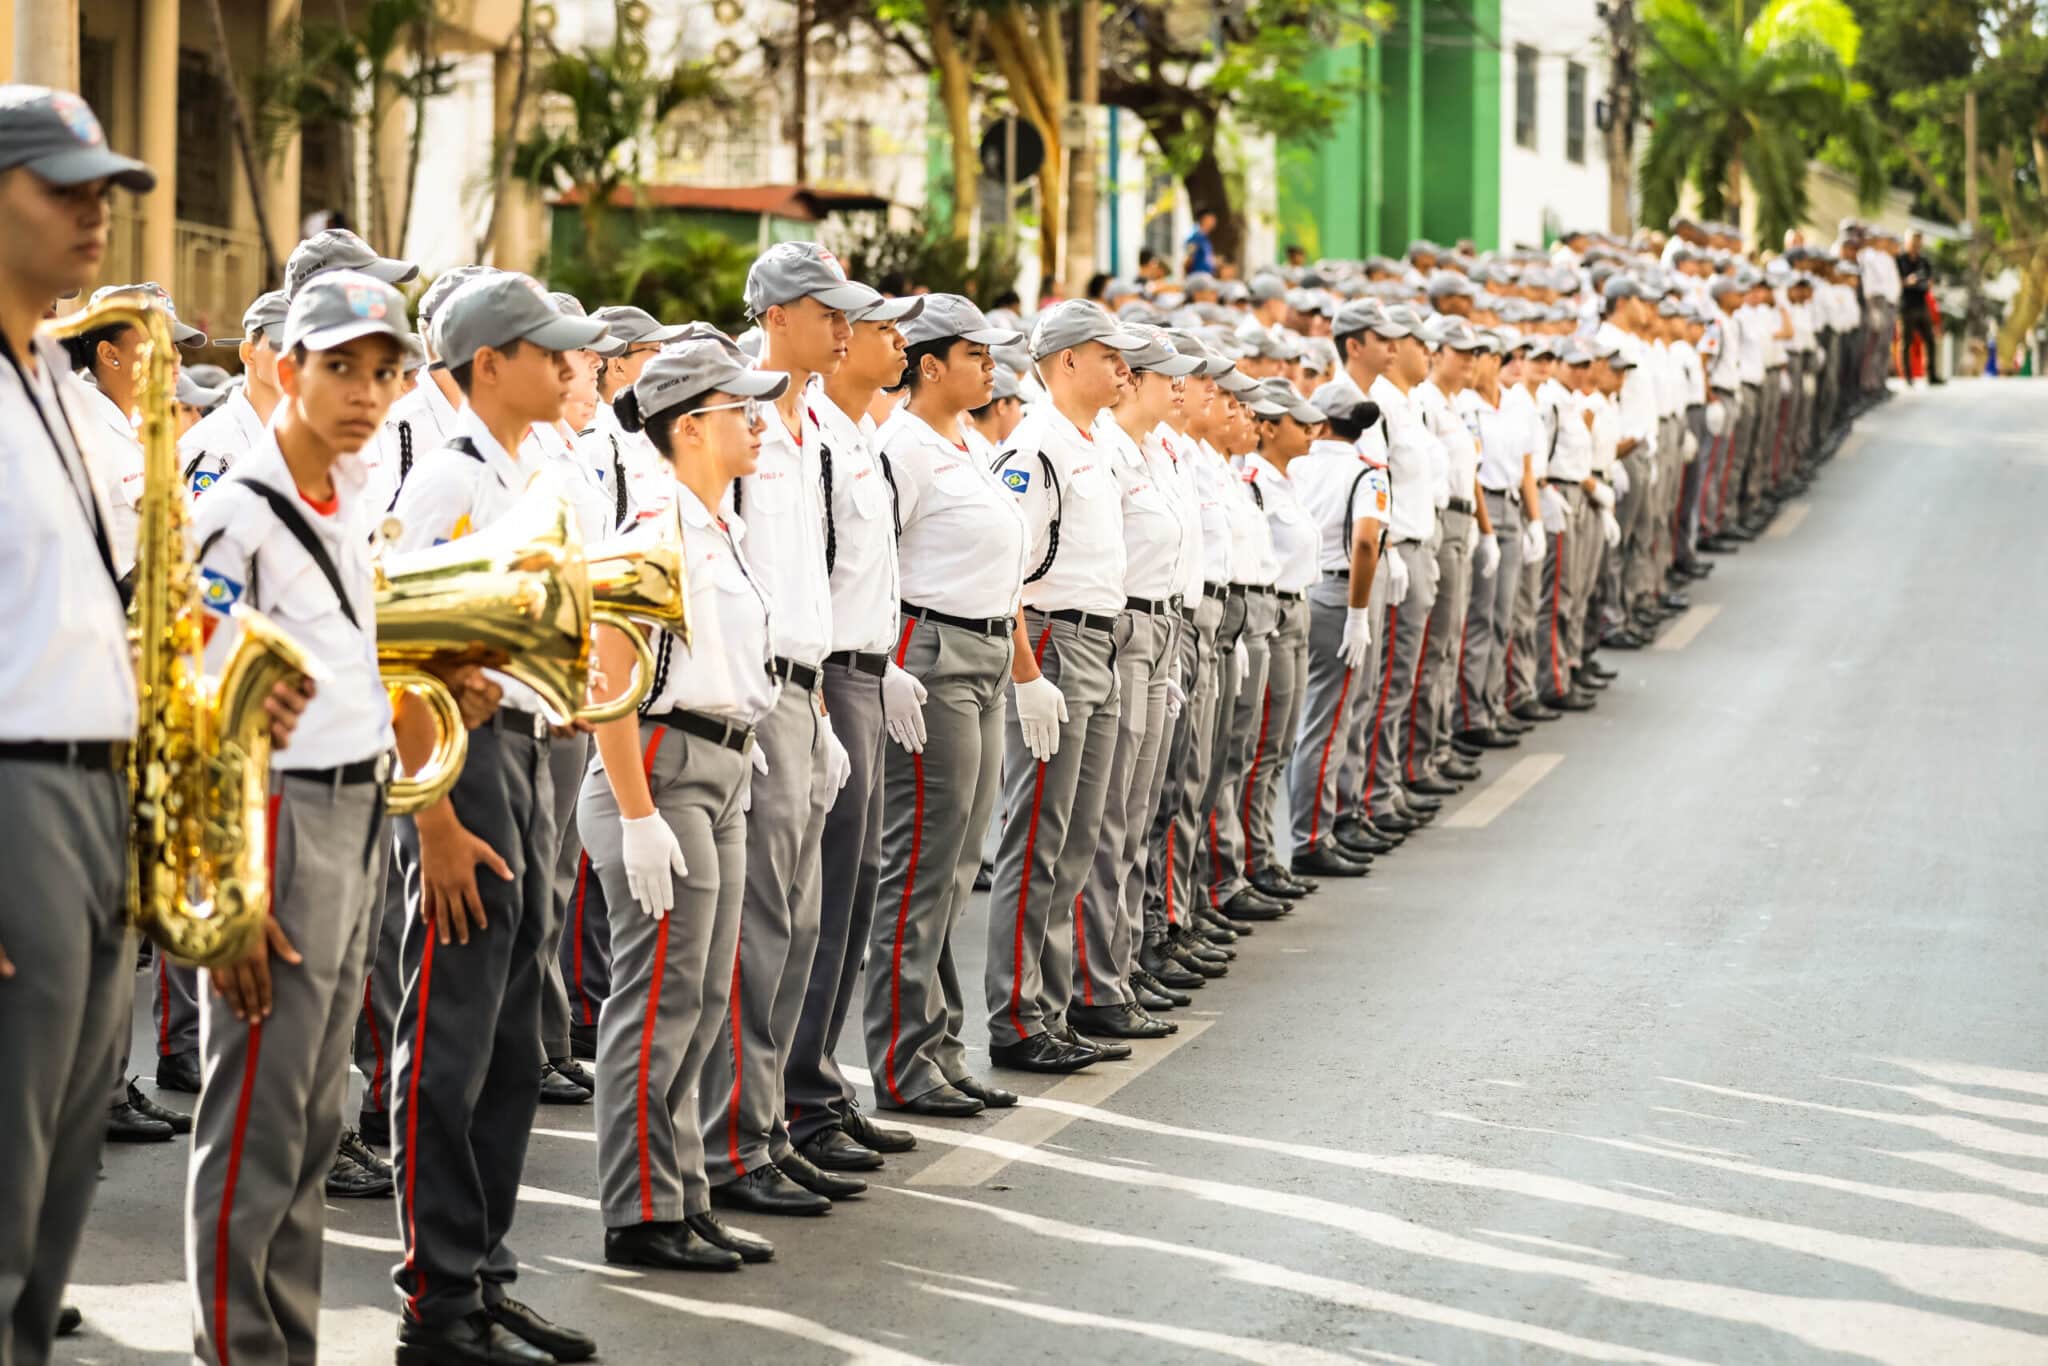 desfile civico militar leva centenas de familias a avenida getulio vargas em cuiaba interna 1 2023 09 08 358111697 scaled 1 scaled